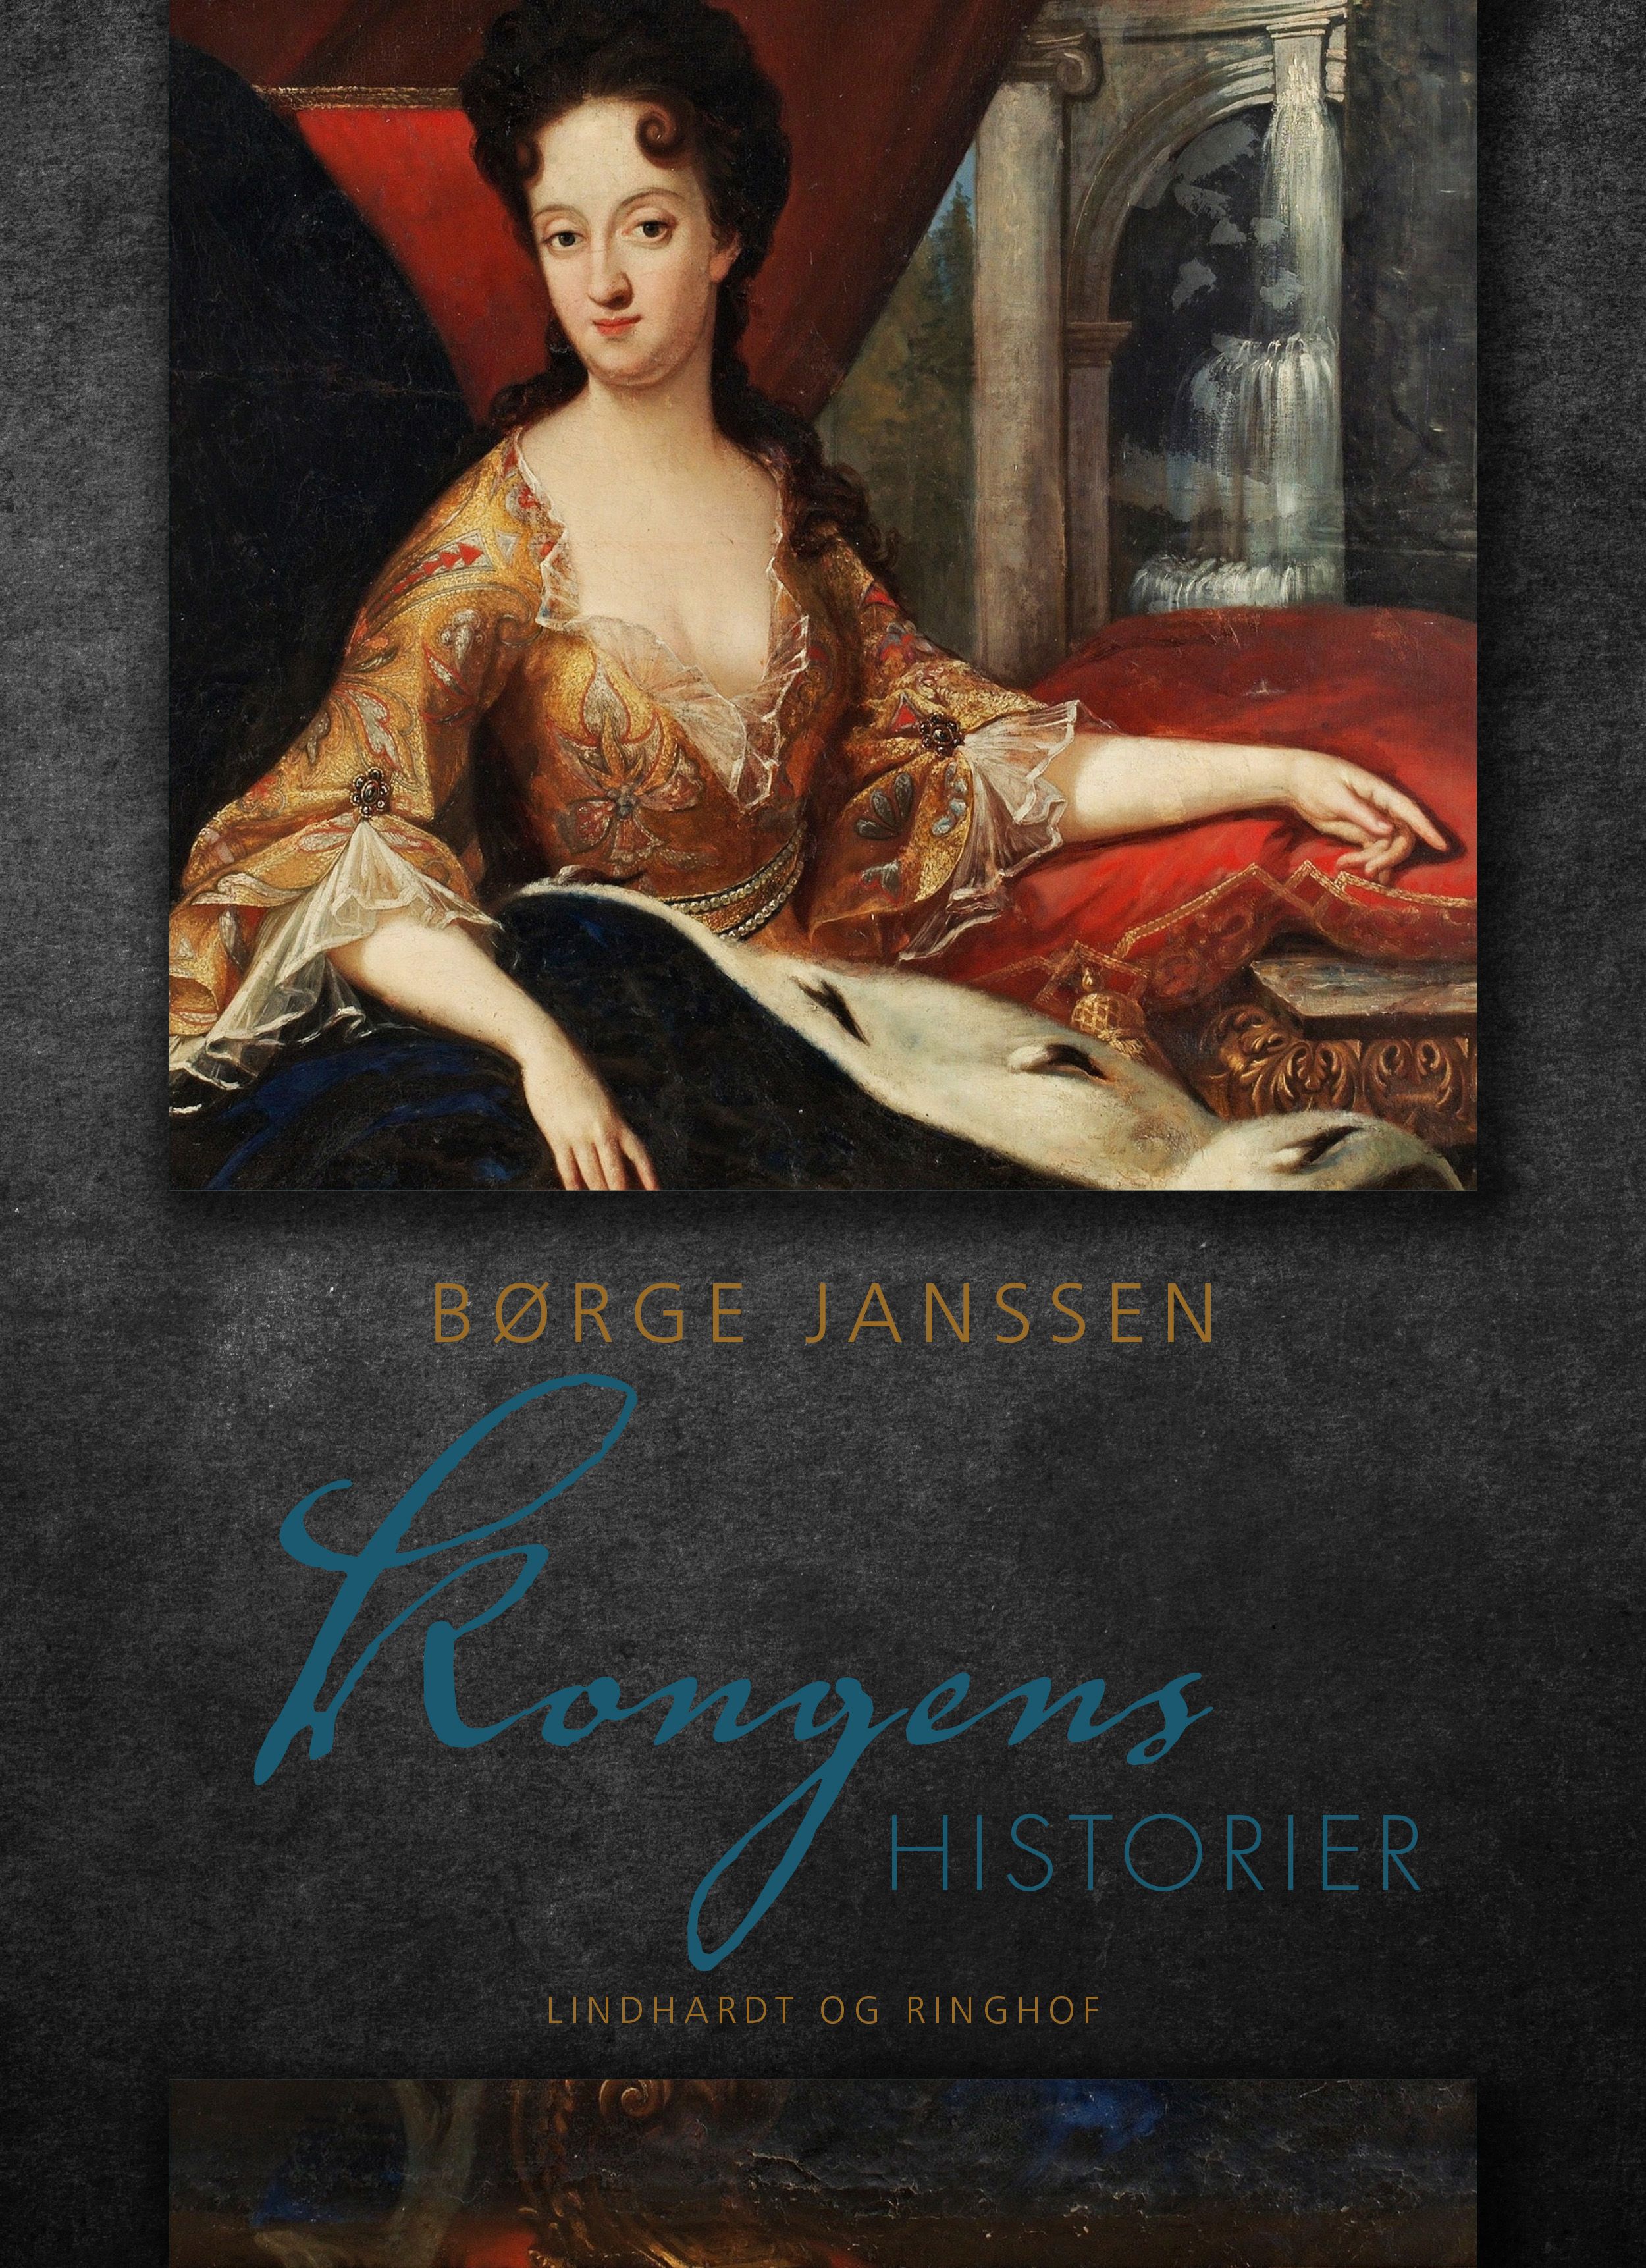 Kongens historier, e-bog af Børge Janssen